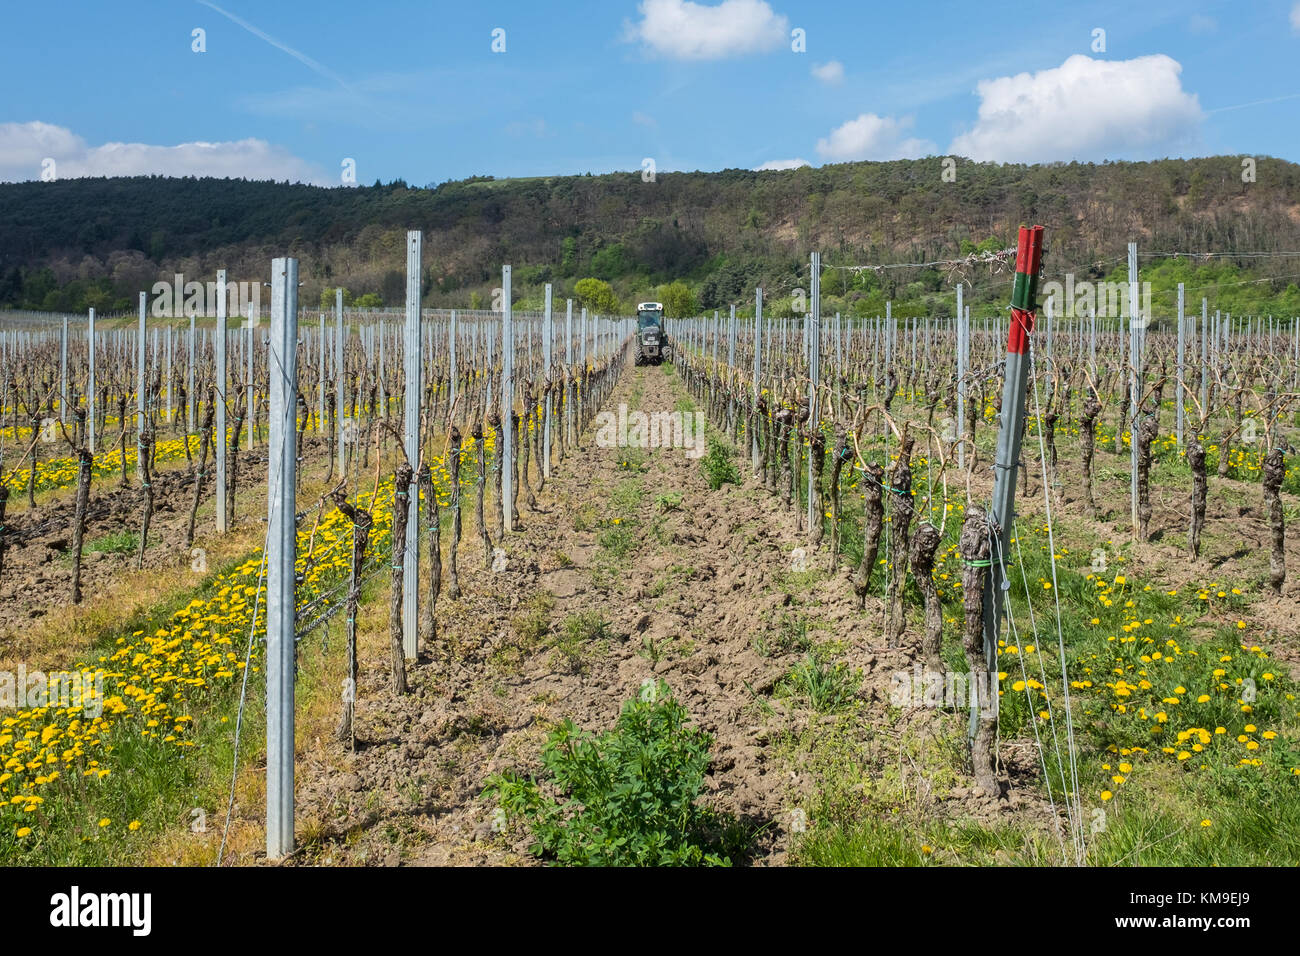 Traktor fahren durch Reben in einem Weingarten, Deutschland Stockfoto